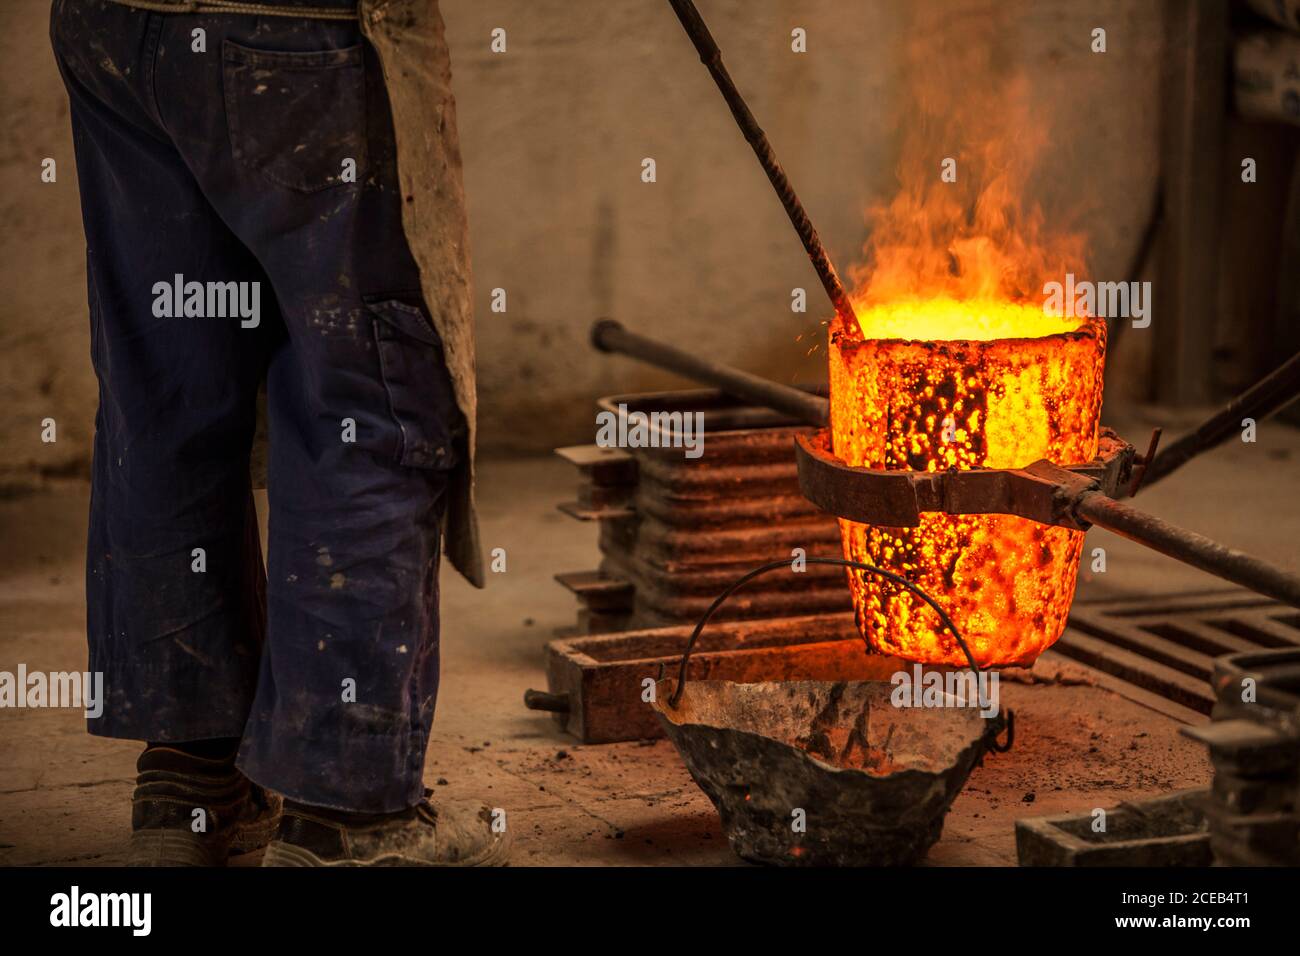 Vue rognée de l'homme dans les vêtements de travail debout et empêchant fours à charbon avec feu Banque D'Images